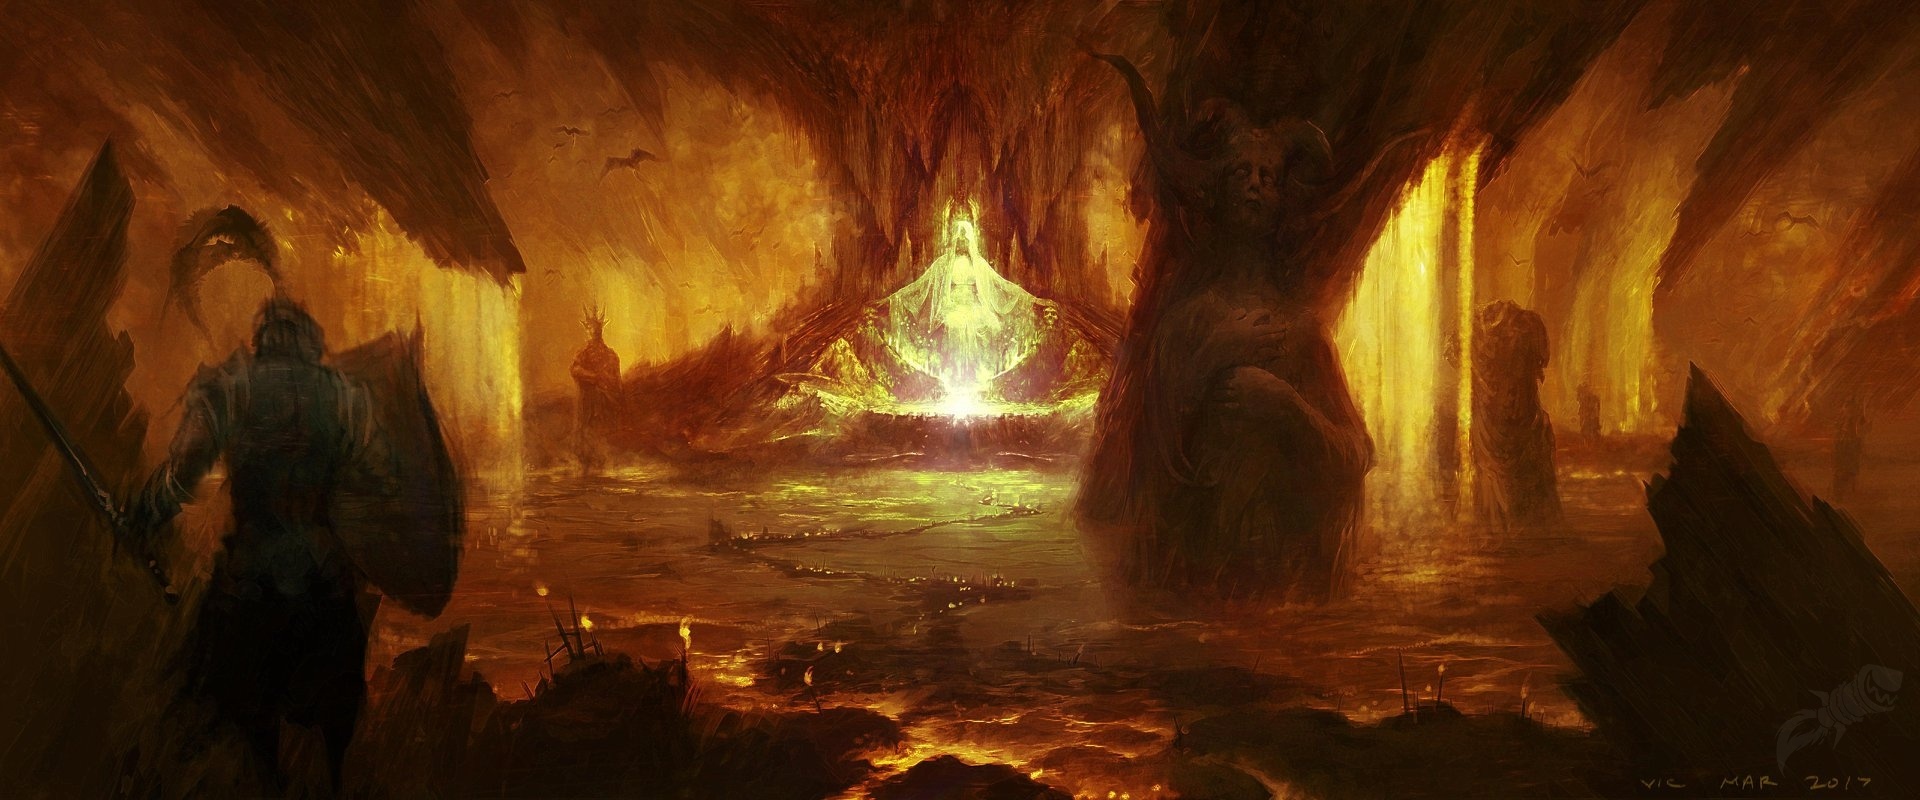 《暗黑破壞神4》概念藝術圖及截圖 場景壯觀畫風黑暗